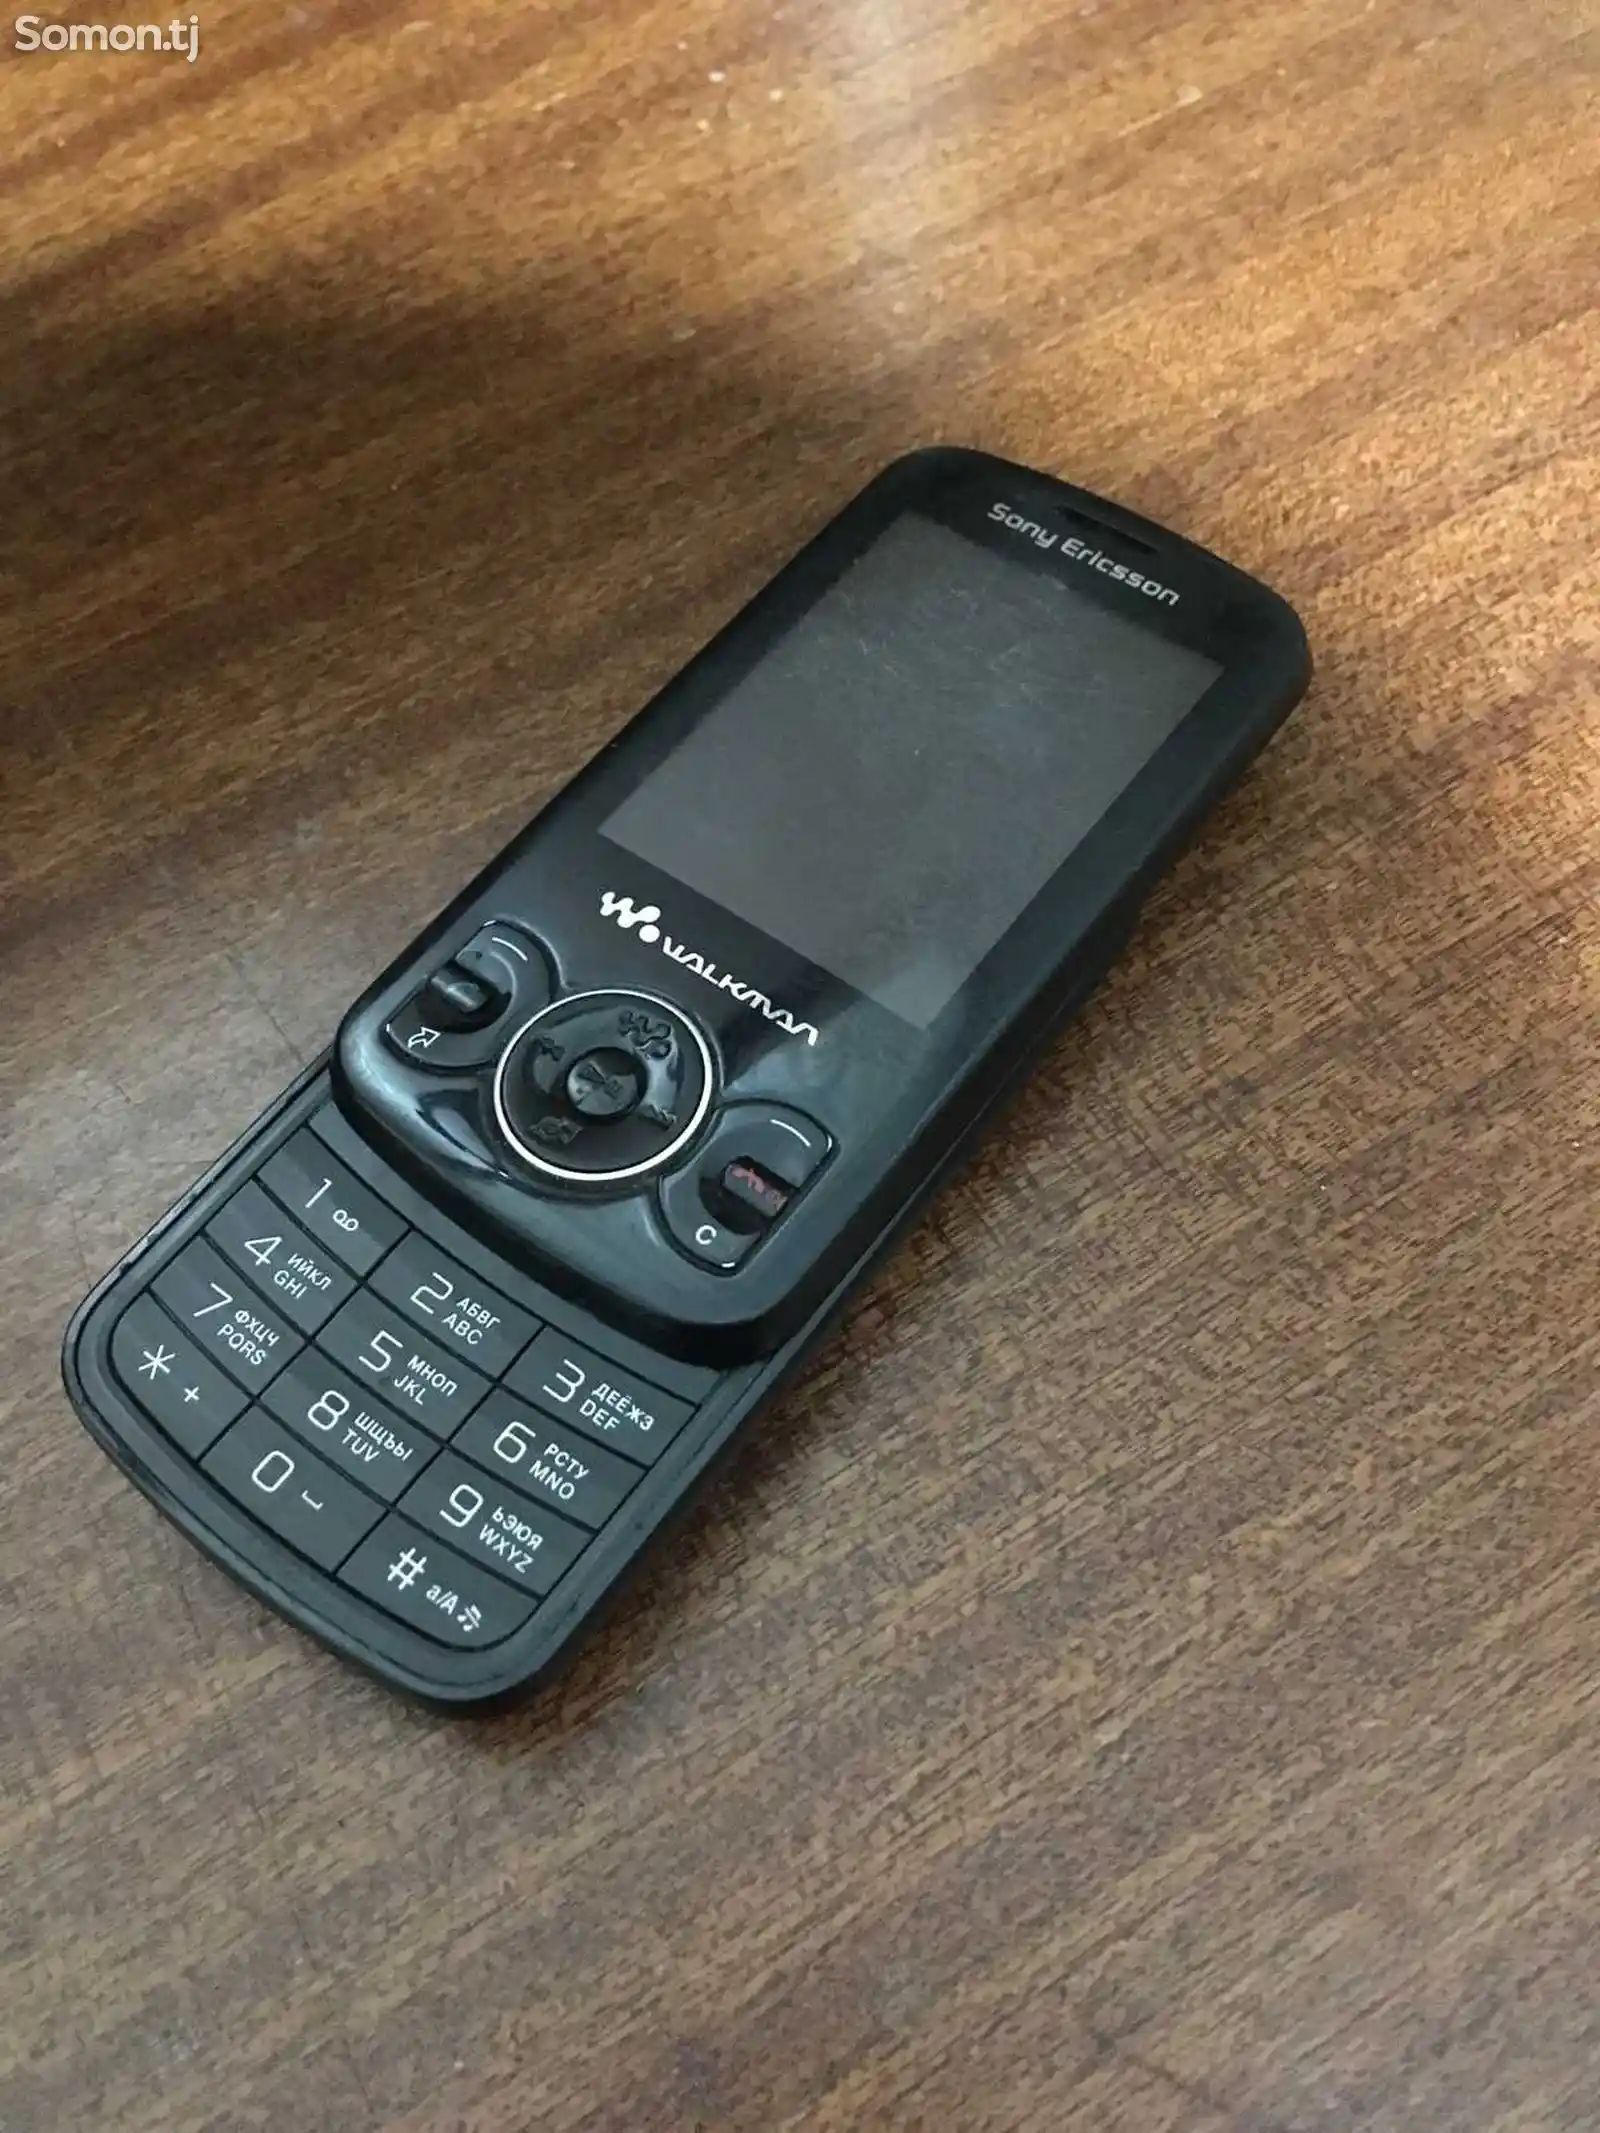 Sony Ericsson W100i-2